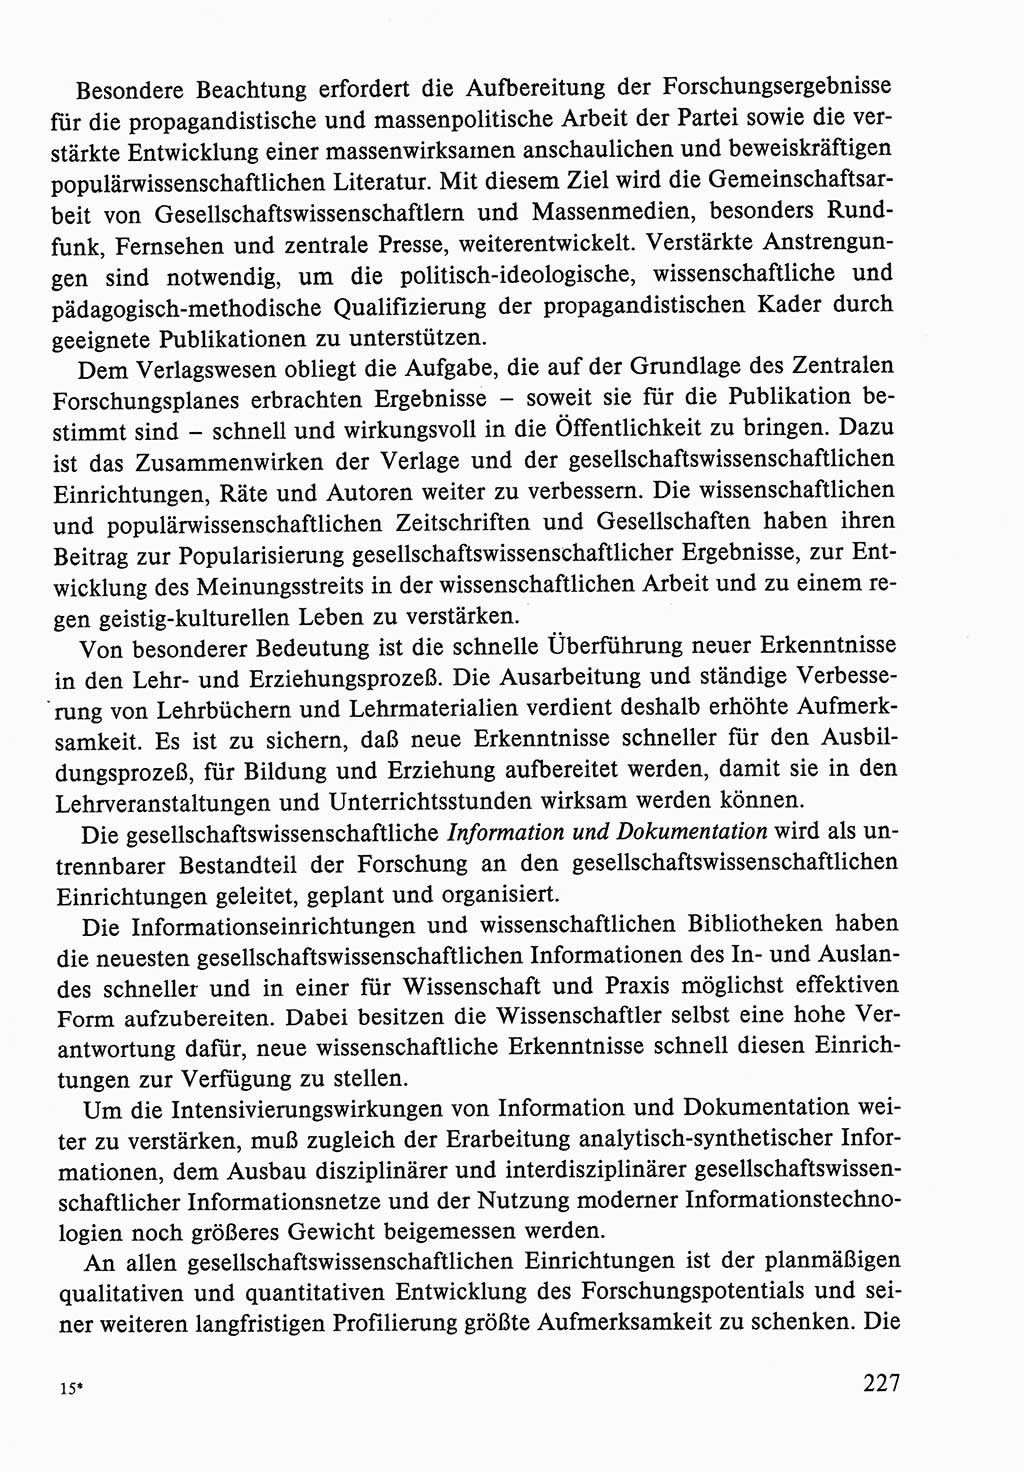 Dokumente der Sozialistischen Einheitspartei Deutschlands (SED) [Deutsche Demokratische Republik (DDR)] 1986-1987, Seite 227 (Dok. SED DDR 1986-1987, S. 227)